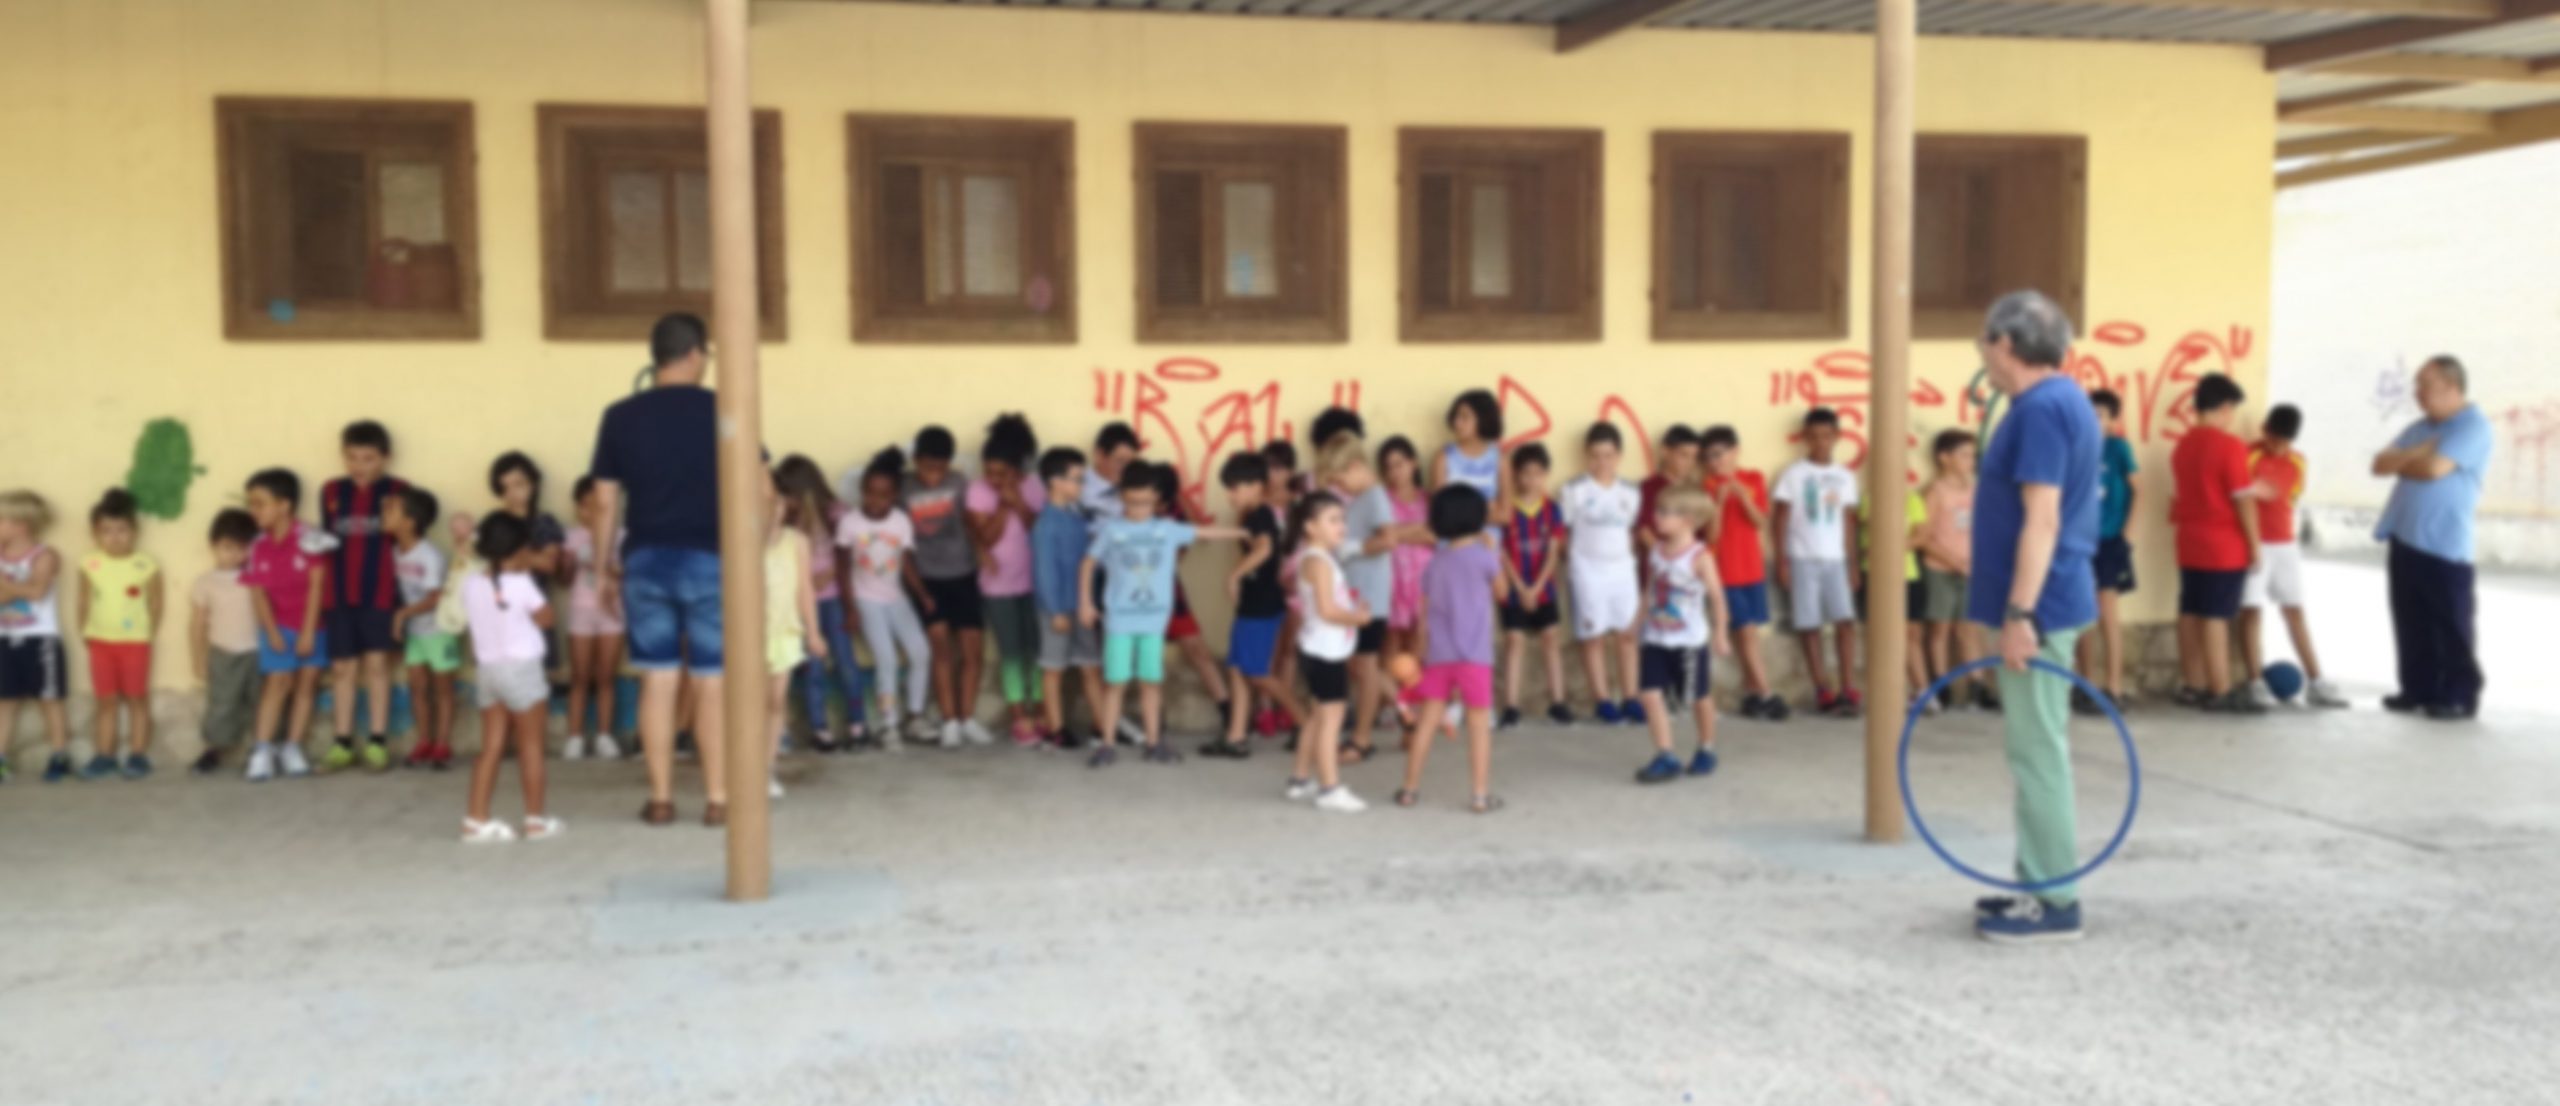 Visits to Virgen de los Llanos and San Pablo publics schools